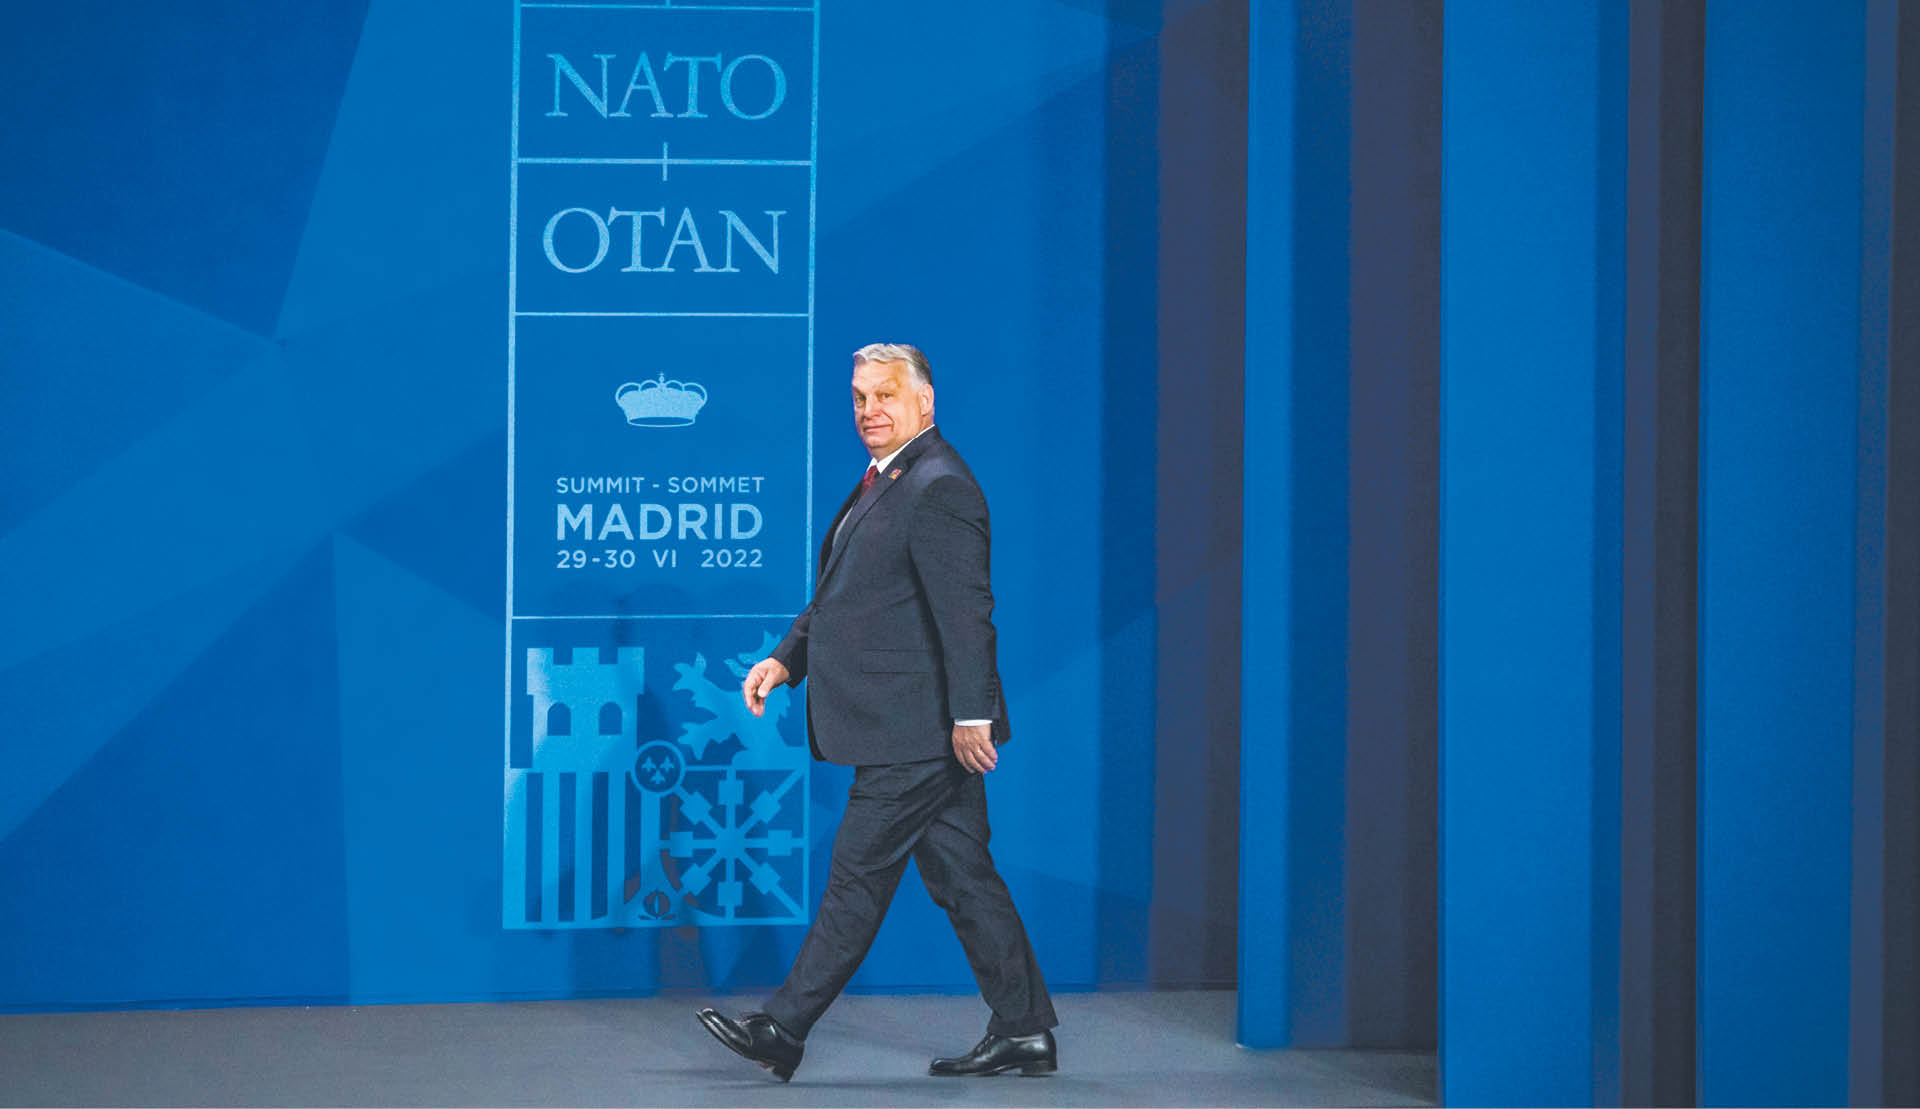 Premier Węgier Viktor Orbán podczas ubiegłorocznego szczytu NATO w Madrycie